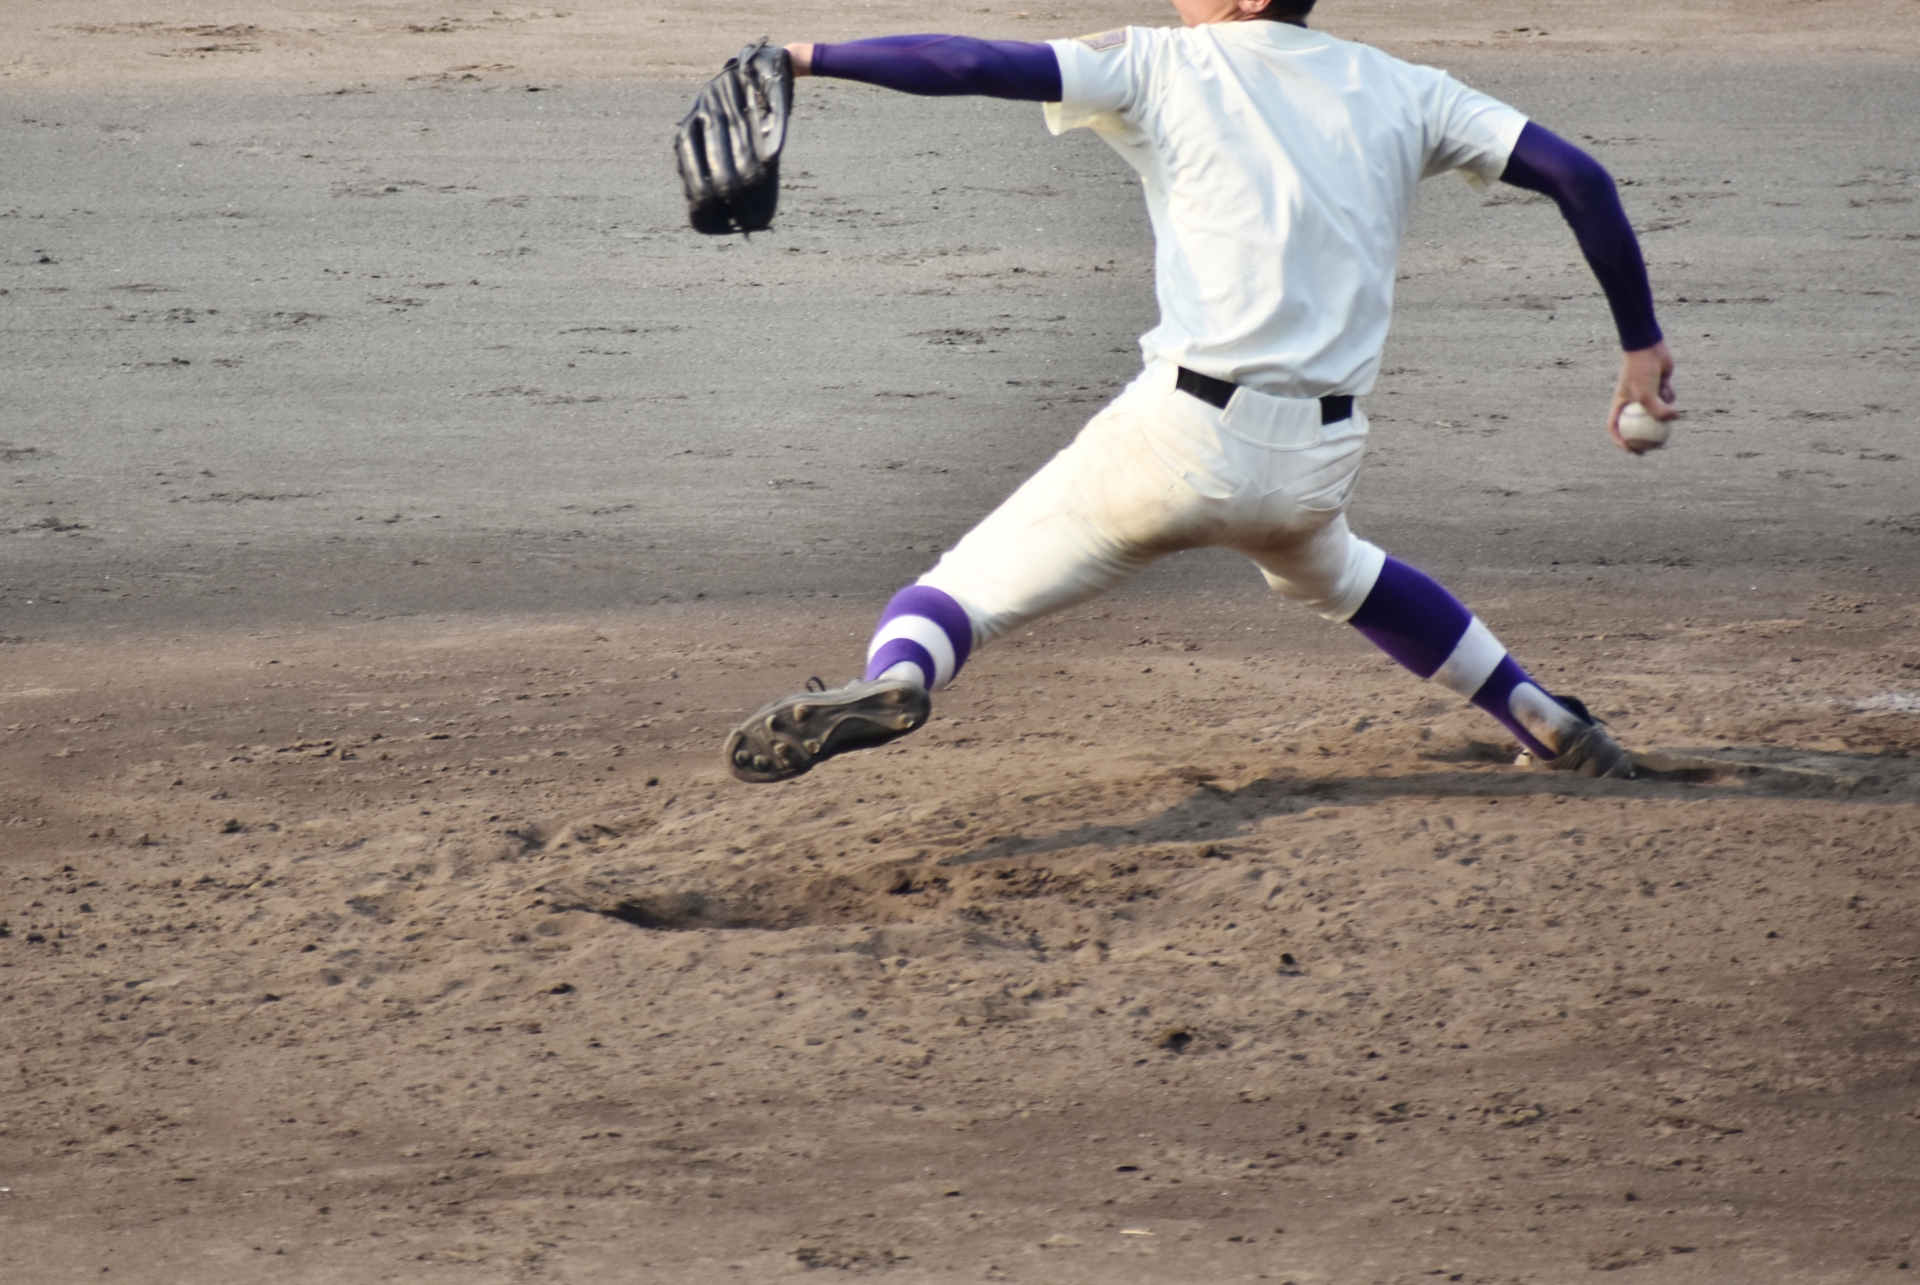 【野球肘の簡単チェック法】野球肘の症状と兆候を見逃さない